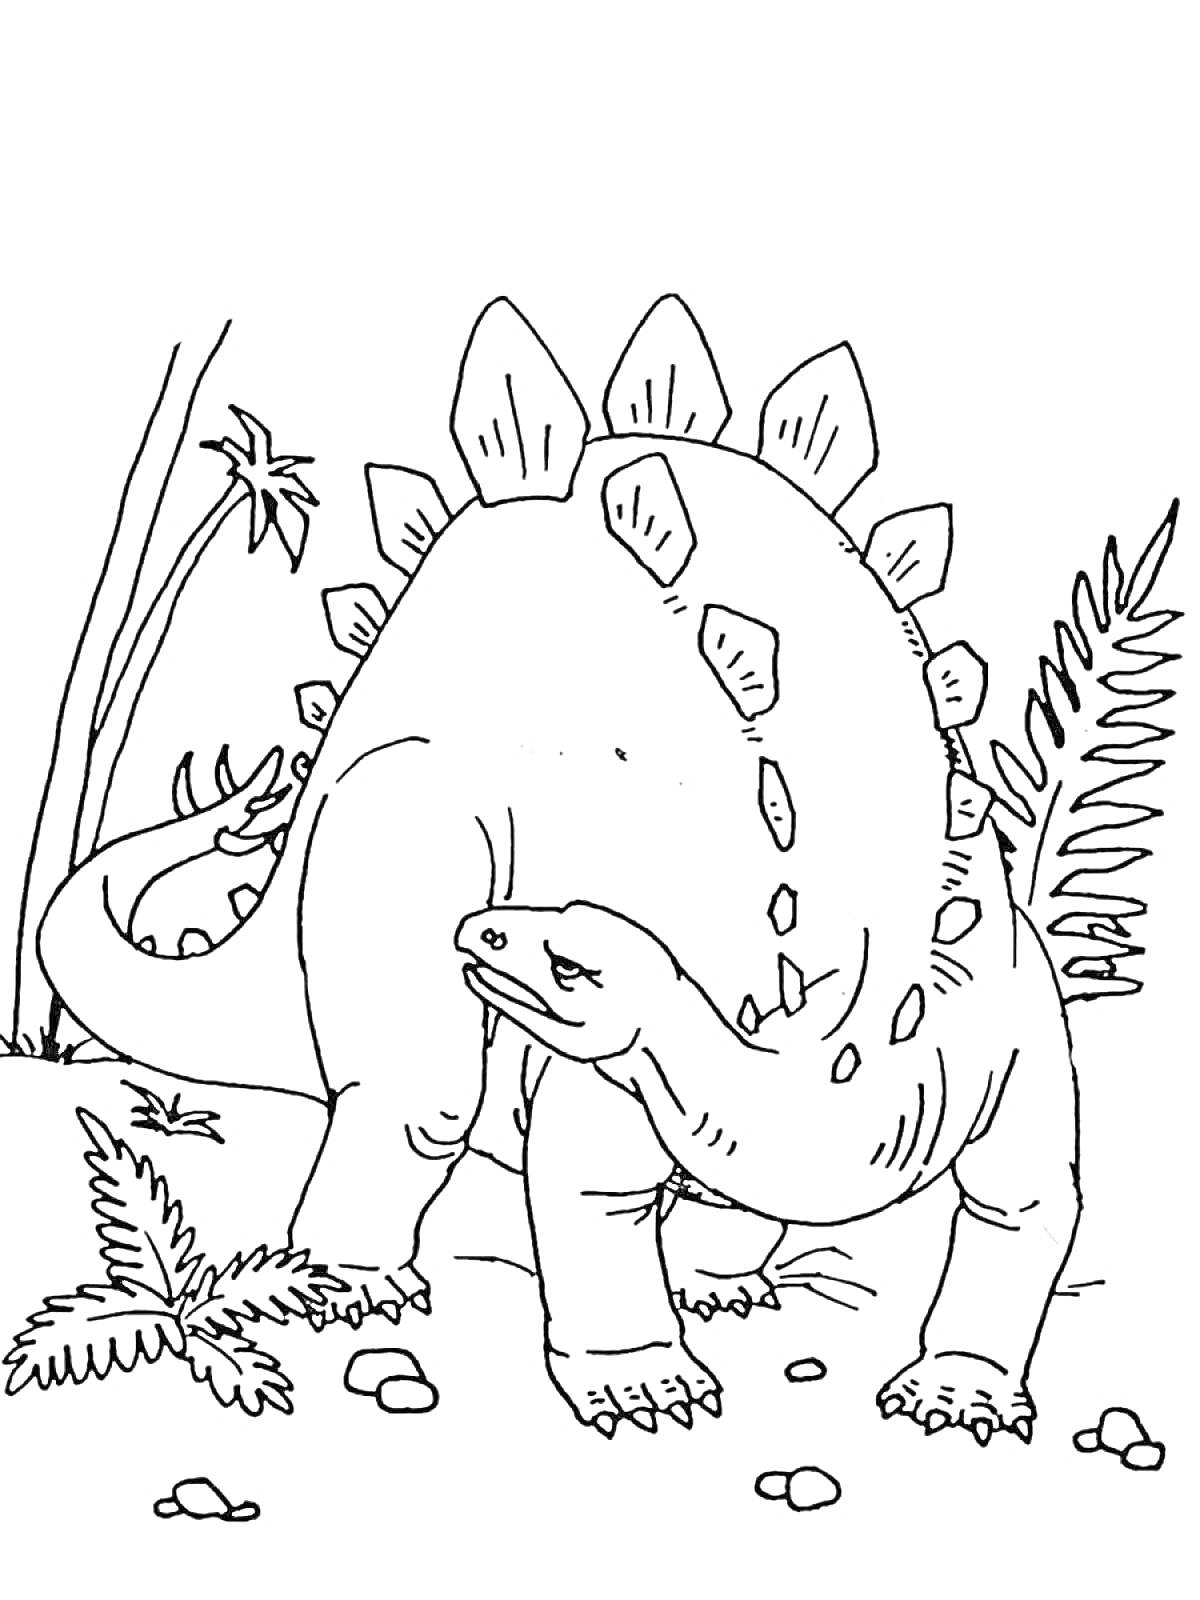 Раскраска Динозавр с пластинами на спине, растительность, камни